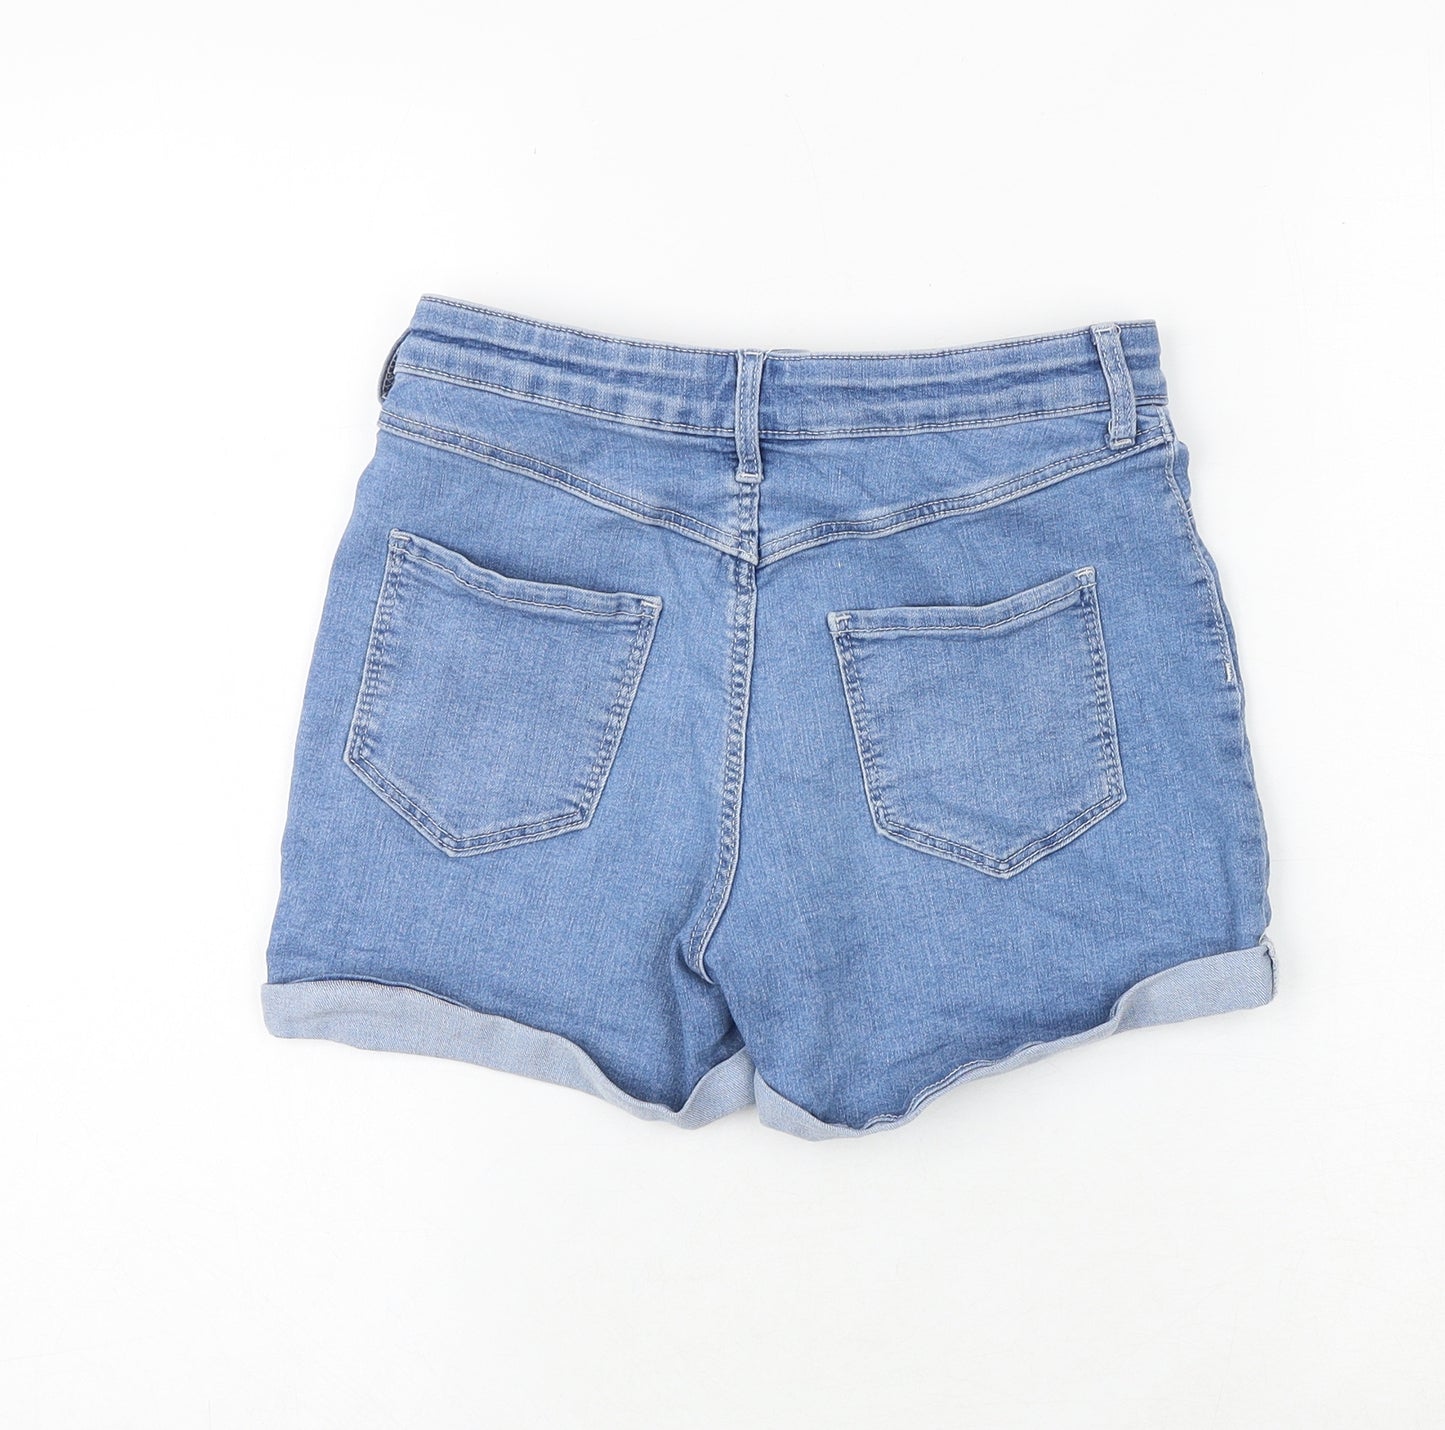 H&M Girls Blue Cotton Boyfriend Shorts Size 12-13 Years Regular Zip